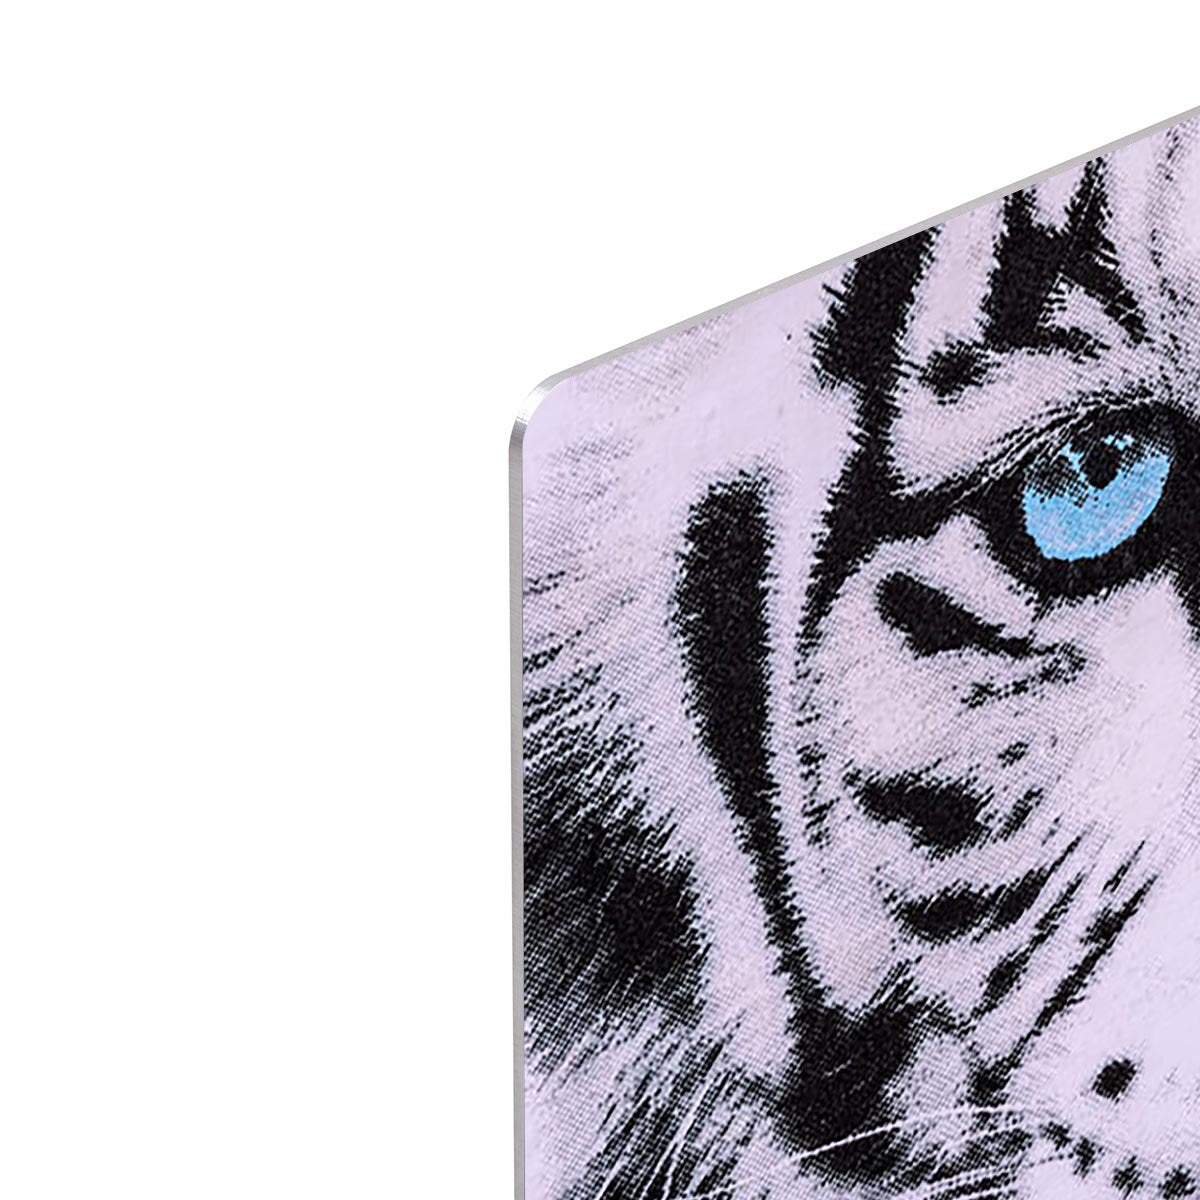 White Tiger Face HD Metal Print - Canvas Art Rocks - 4